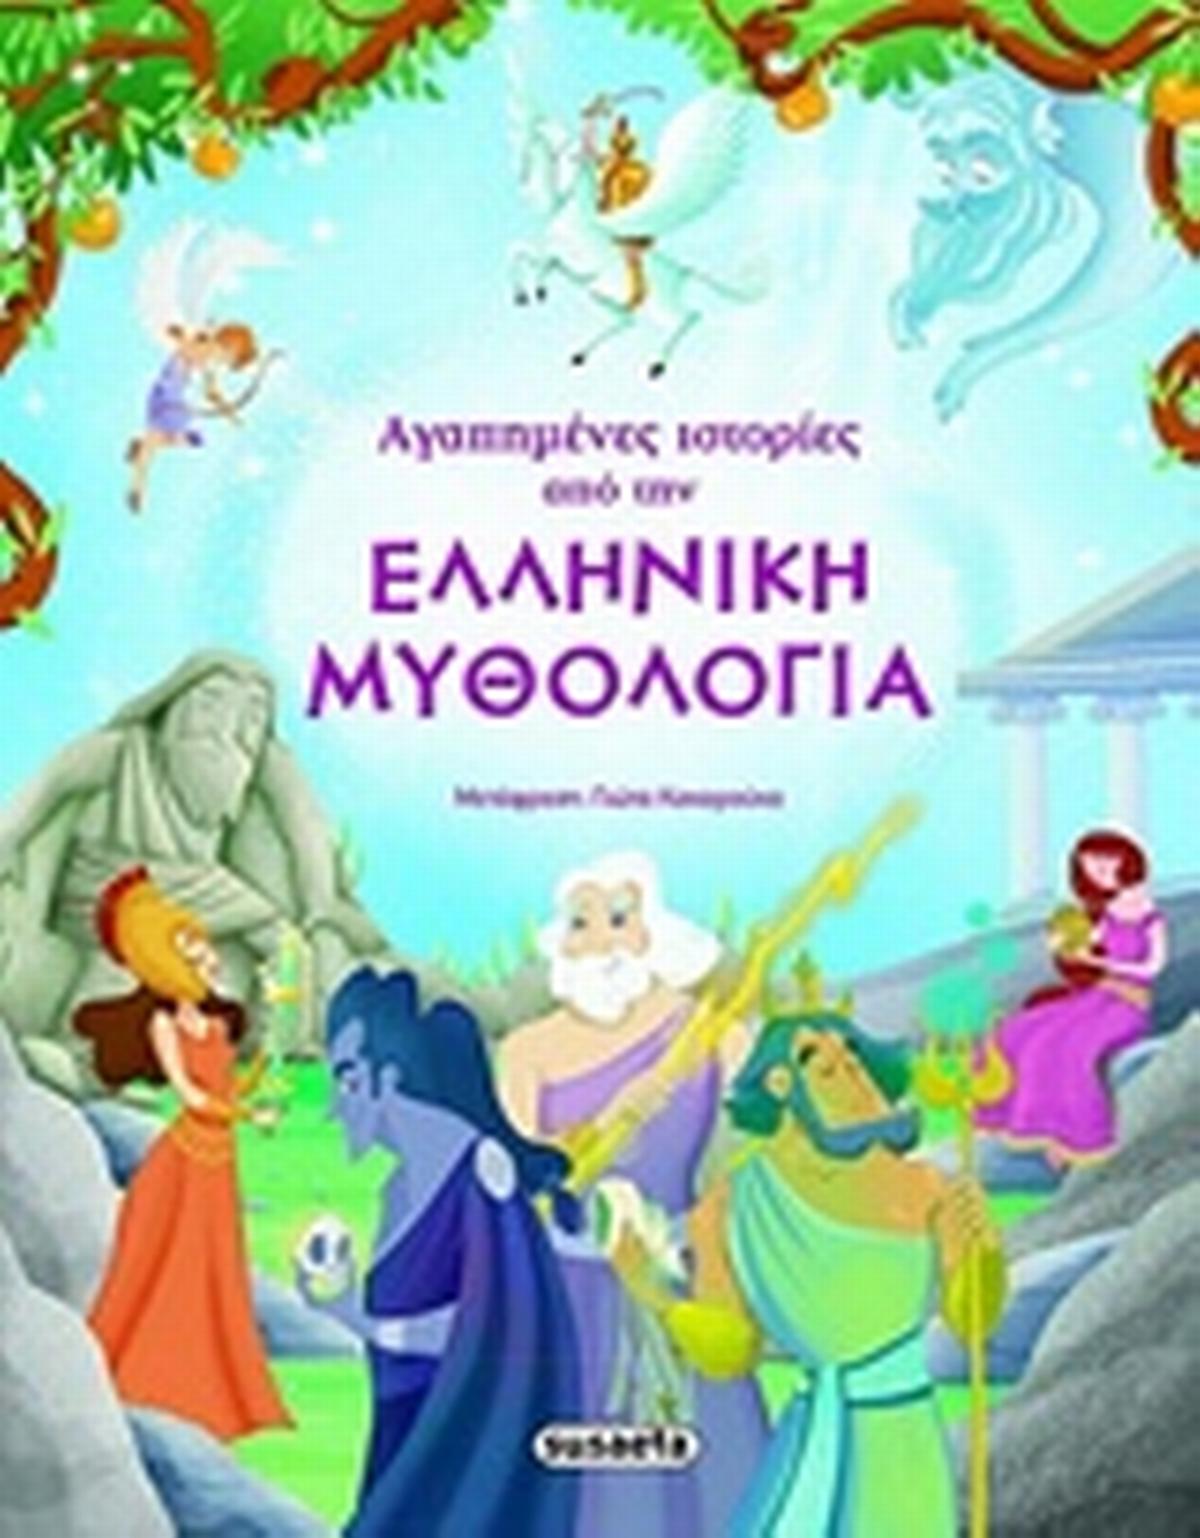 Αγαπημένες ιστορίες από την ελληνική μυθολογία